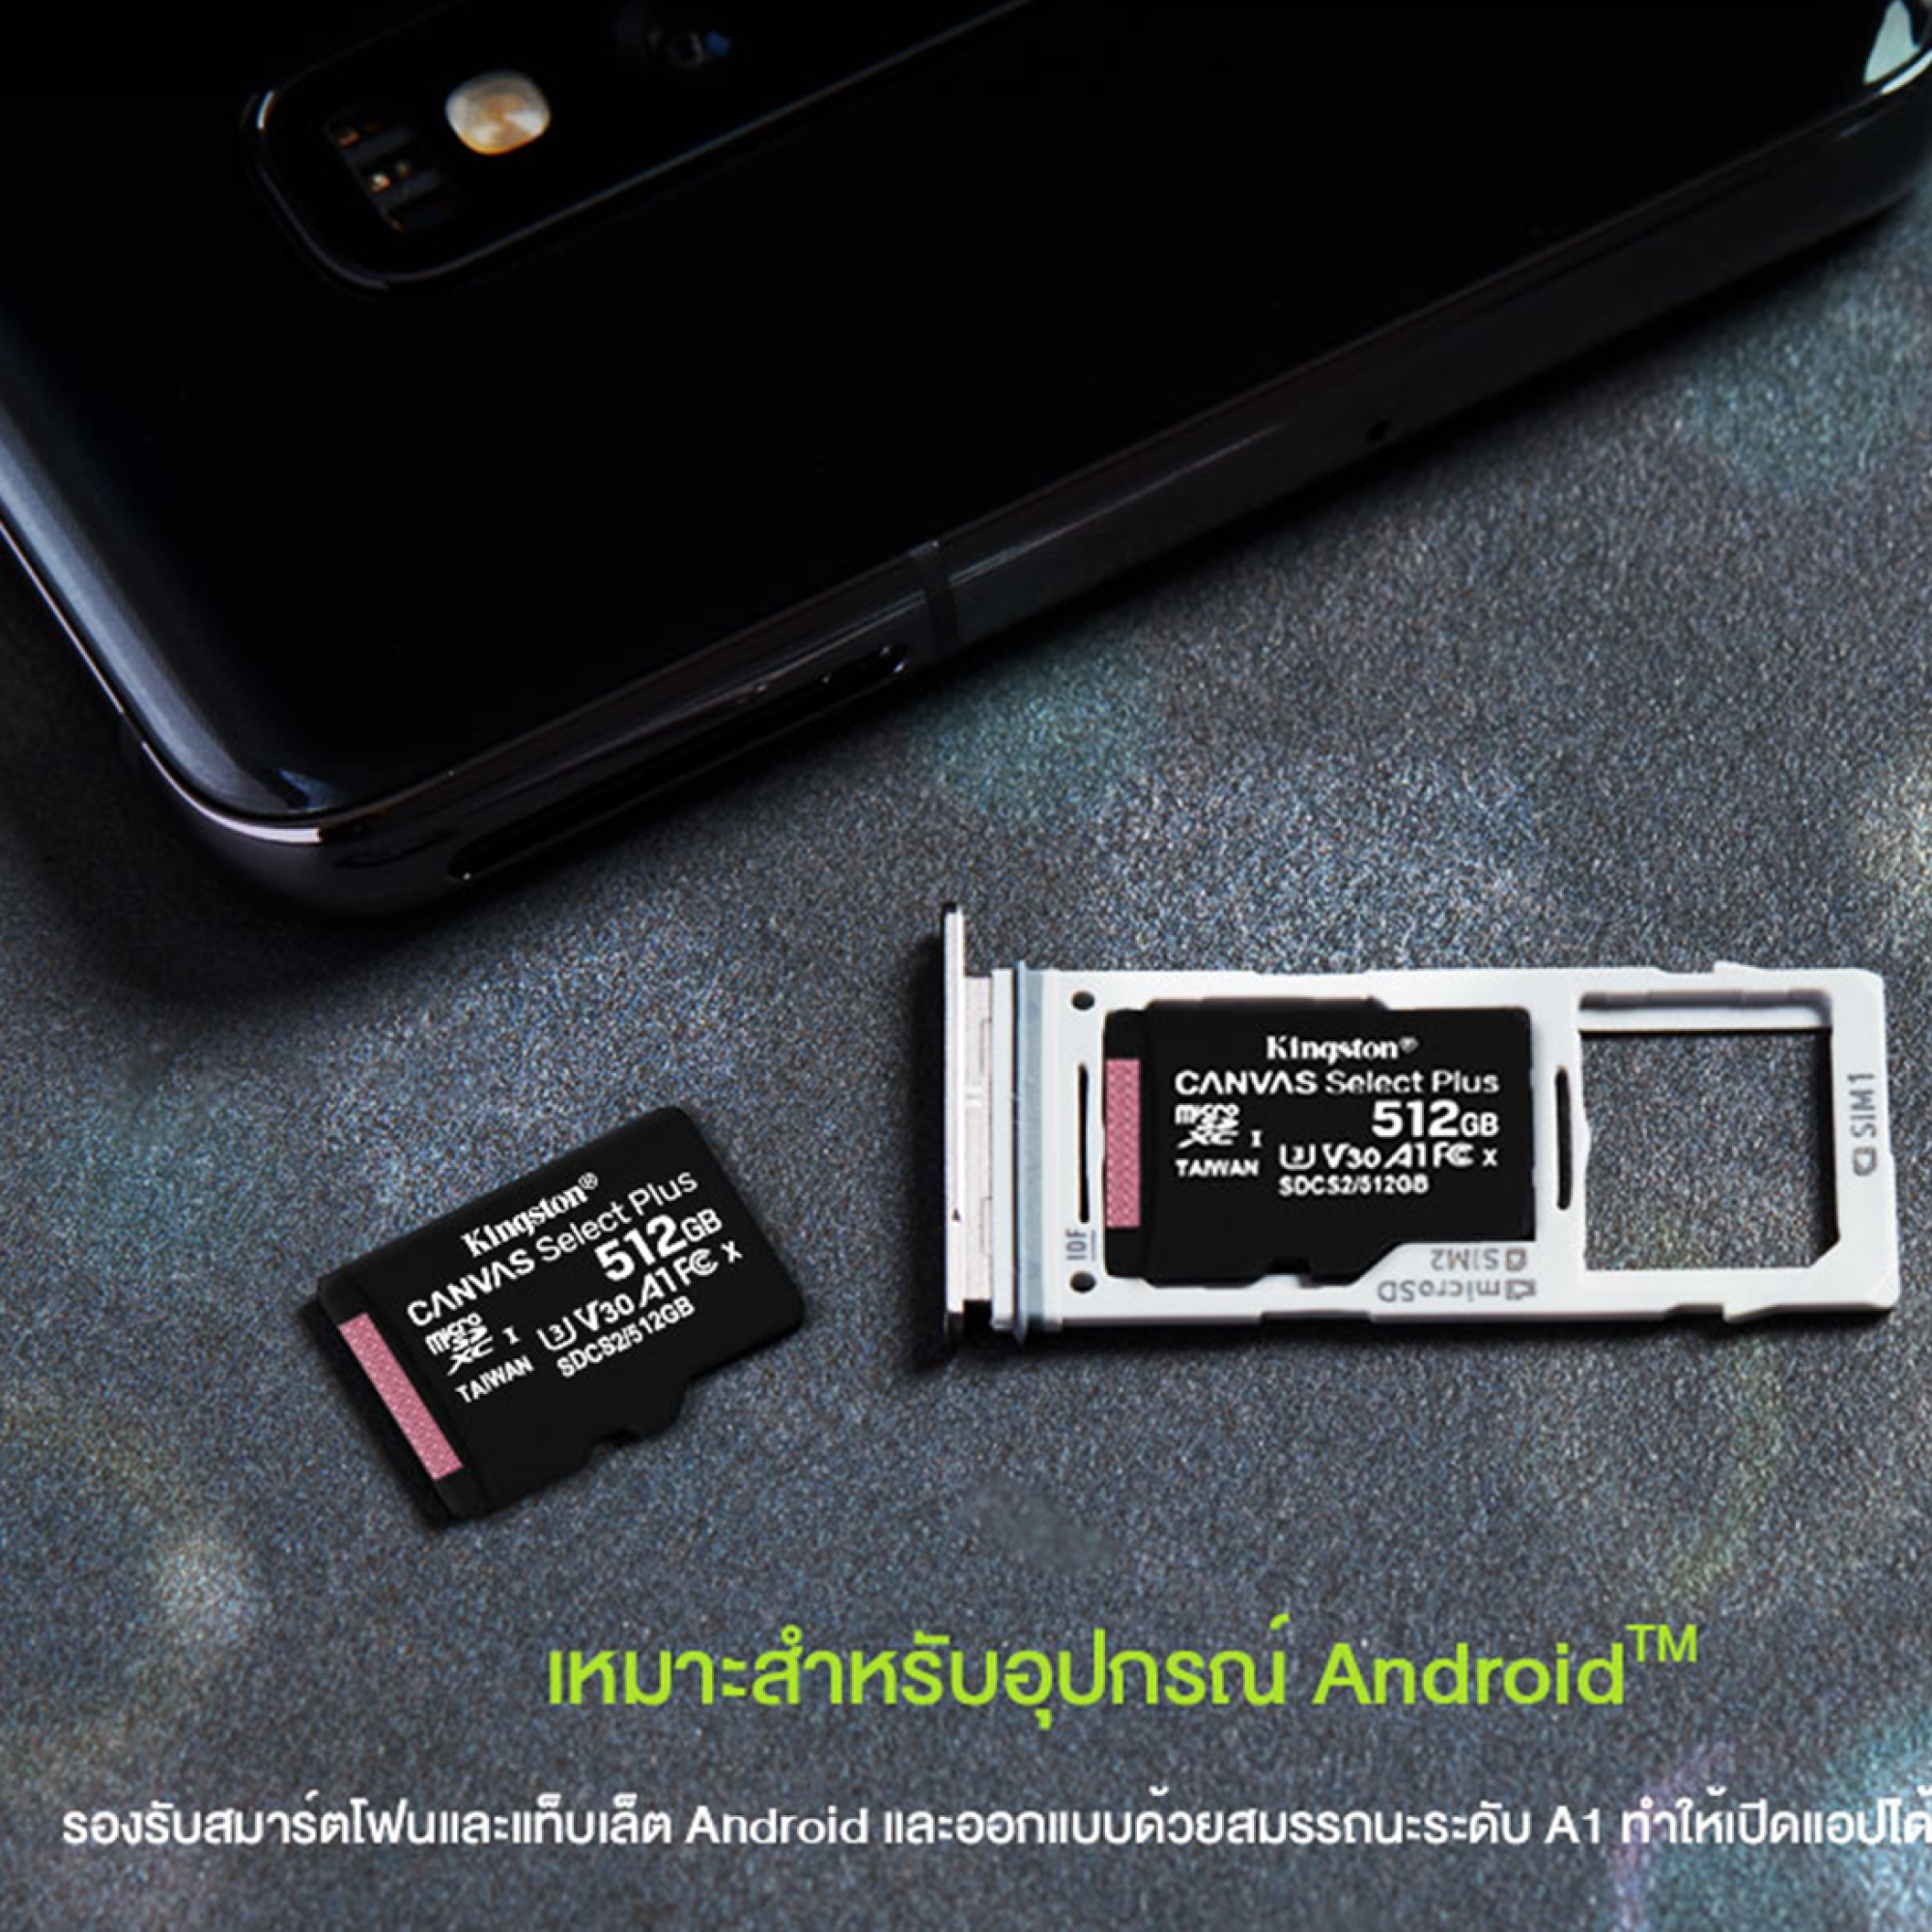 ภาพอธิบายเพิ่มเติมของ Kingston microSD Card Canvas Select Plus ความจุ เมมโมรี่การ์ด 16GB 32GB 64GB Class 10 ความเร็ว 100MB/s (SDCS2/32GBFR)